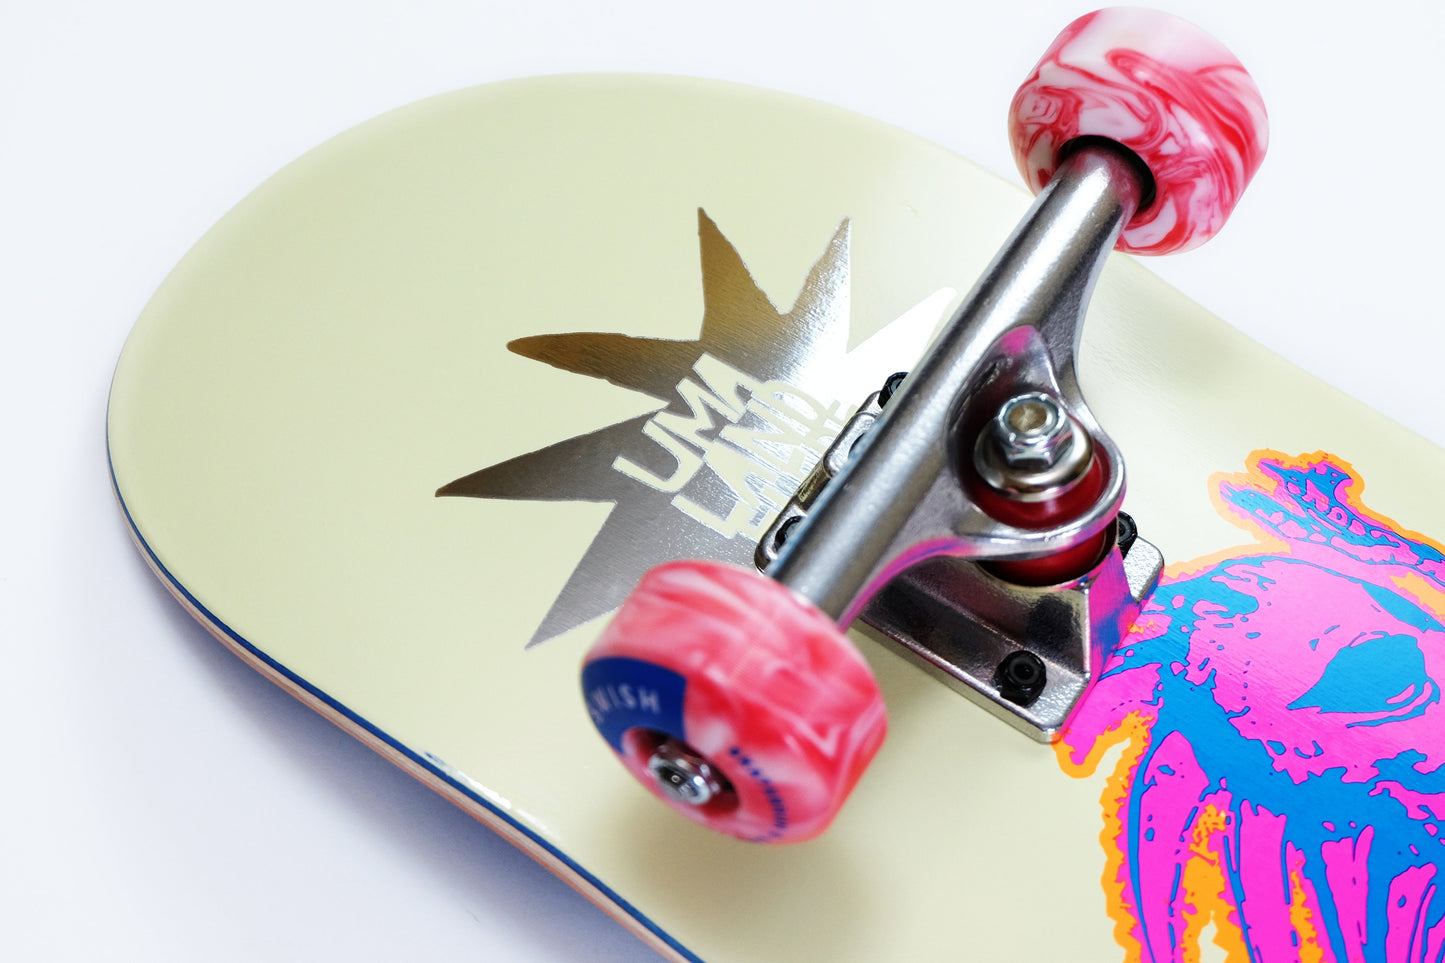 UMA 8.25" Evan Smith Chupacabara skateboard - SkatebruhSG